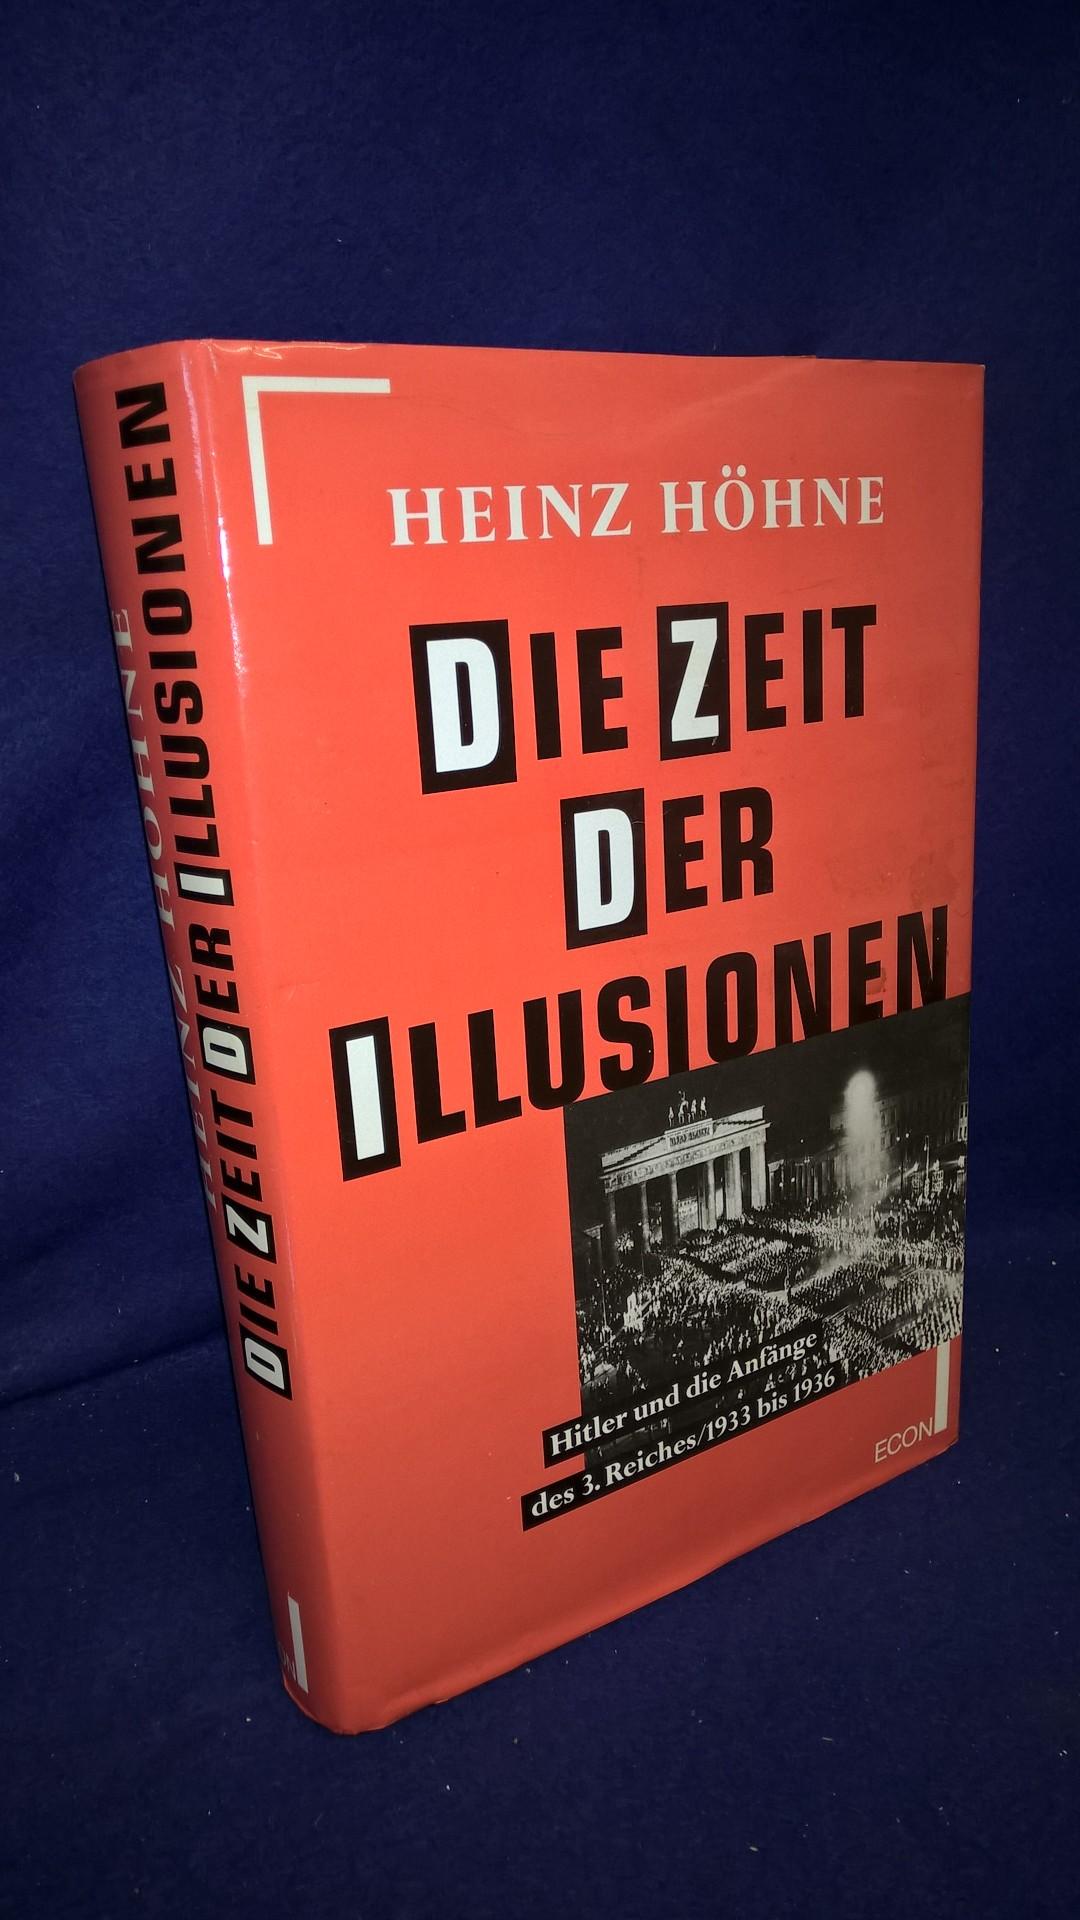 Die Zeit der Illusionen - Hitler und die anfänge des 3. Reiches / 1933 bis 1936